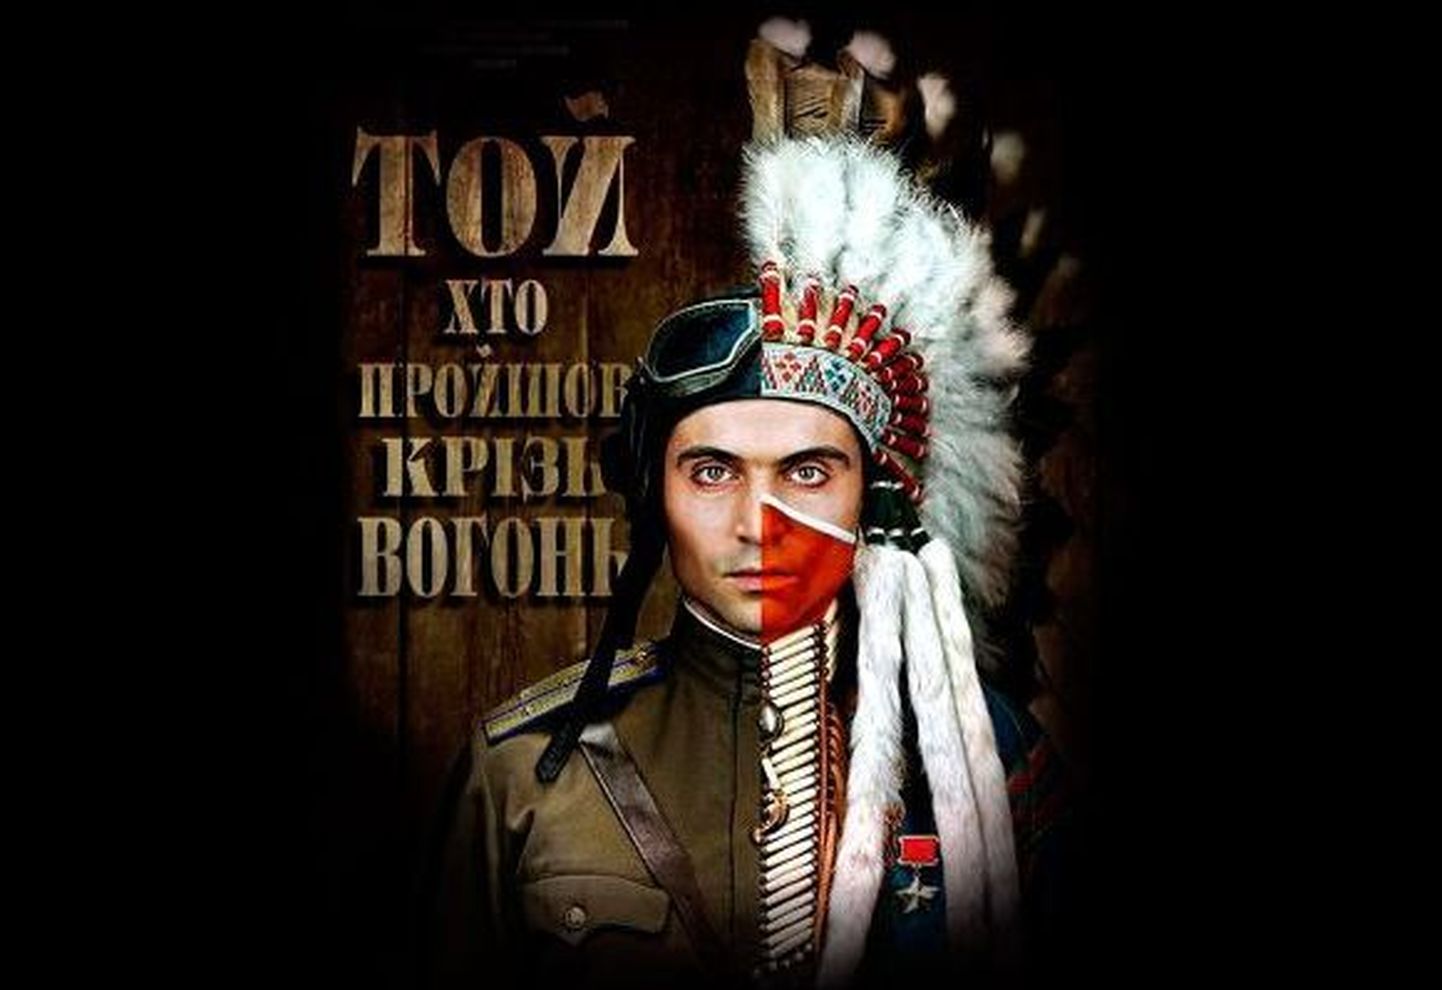 Ukraina kultuuripäevadel näeb filmi sõdurist, kellest sai indiaanipealik